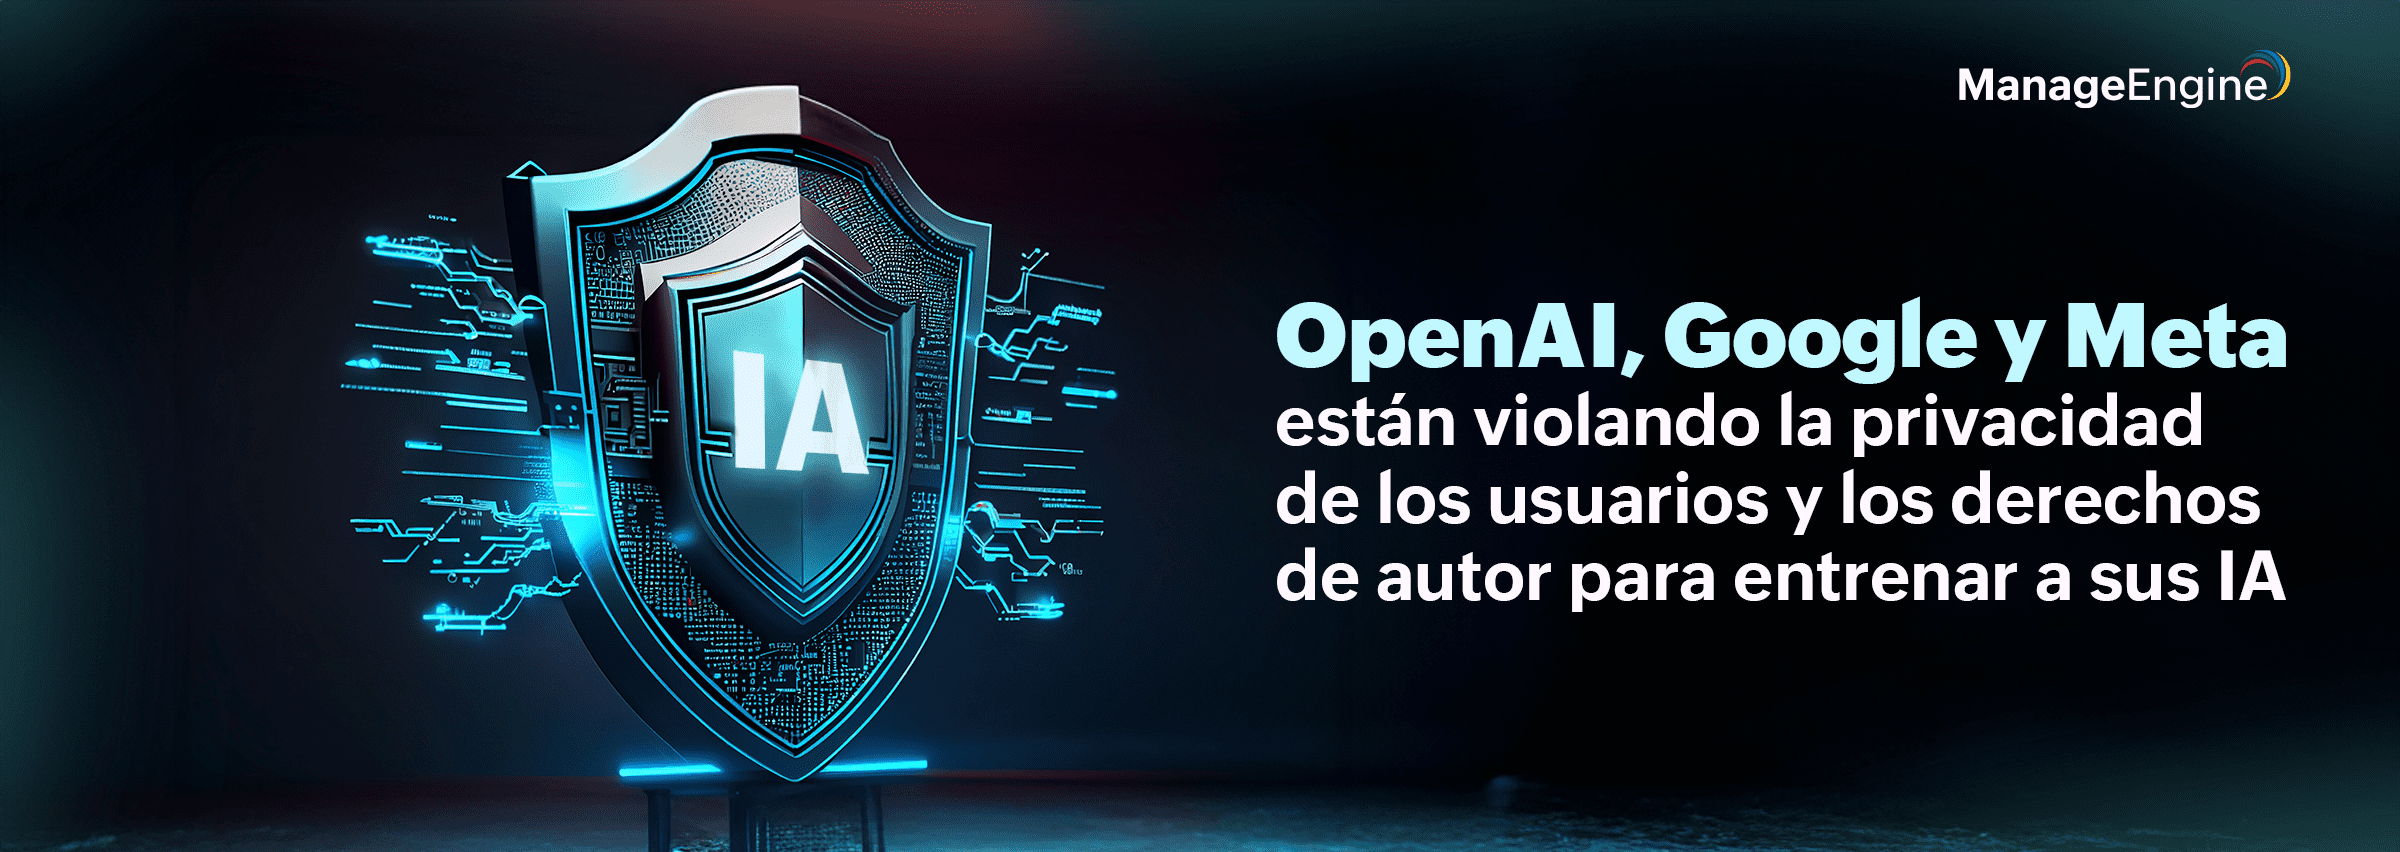 OpenAI, Google y Meta están violando la privacidad de los usuarios y los derechos de autor para entrenar a sus IA